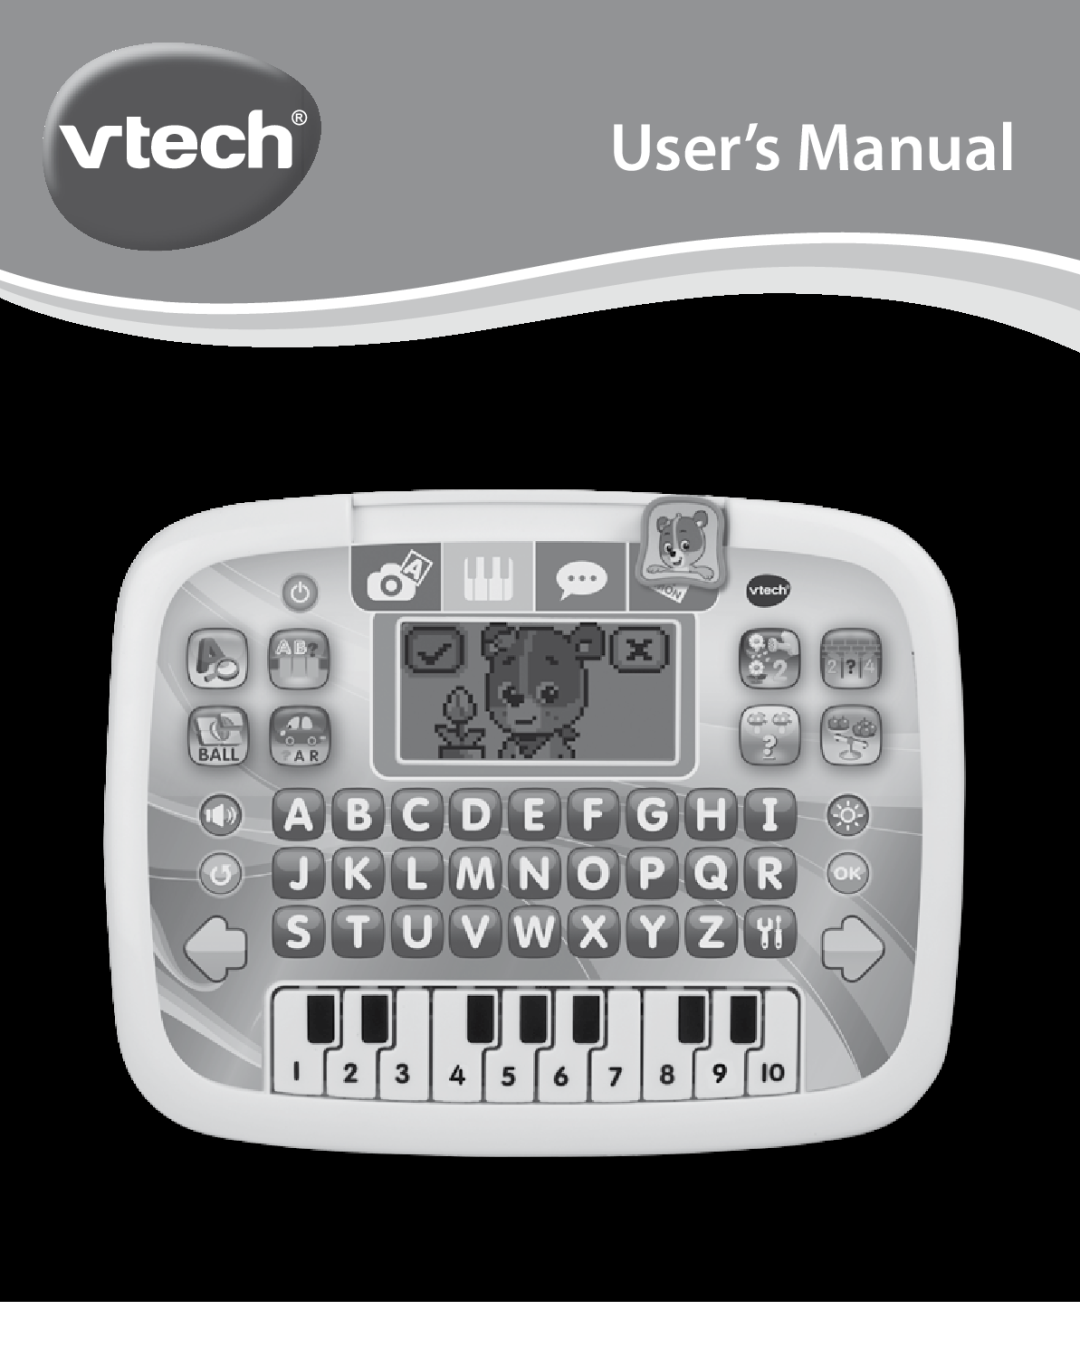 VTech user manual Little Apps TabletTM, User’s Manual, VTech, 91-002815-008 US 